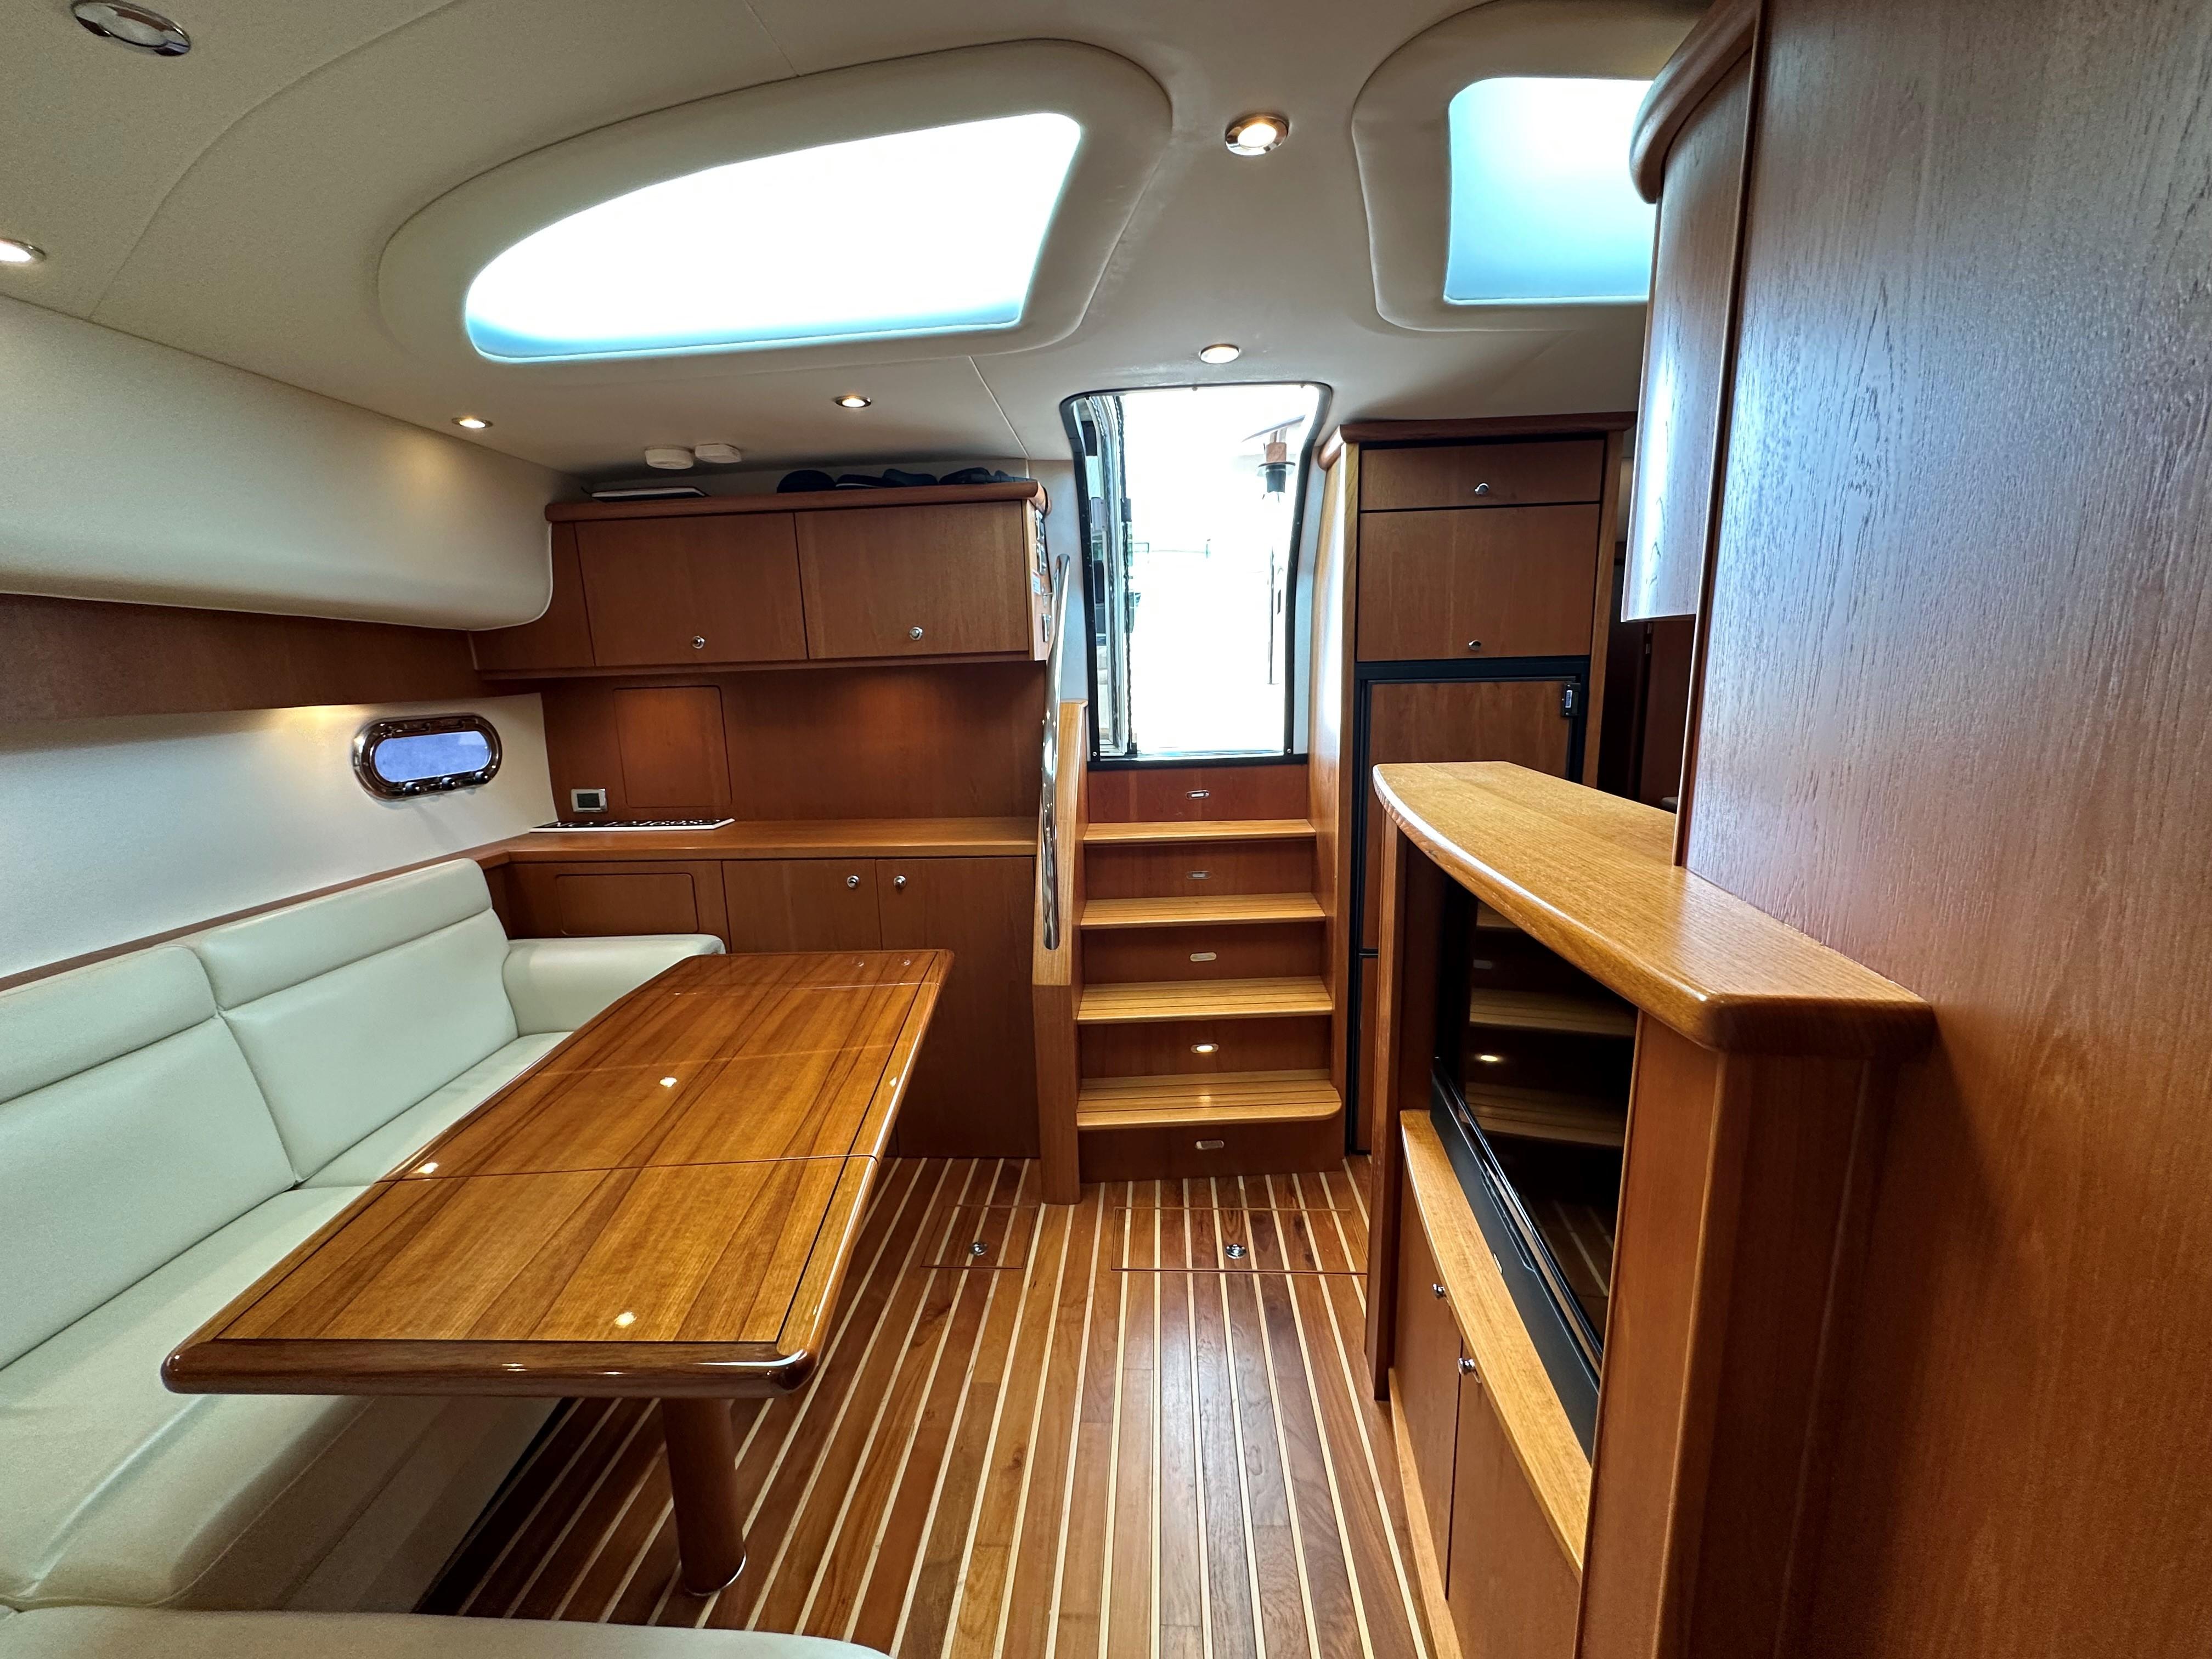 2013 Tiara Yachts 4500 Sovran